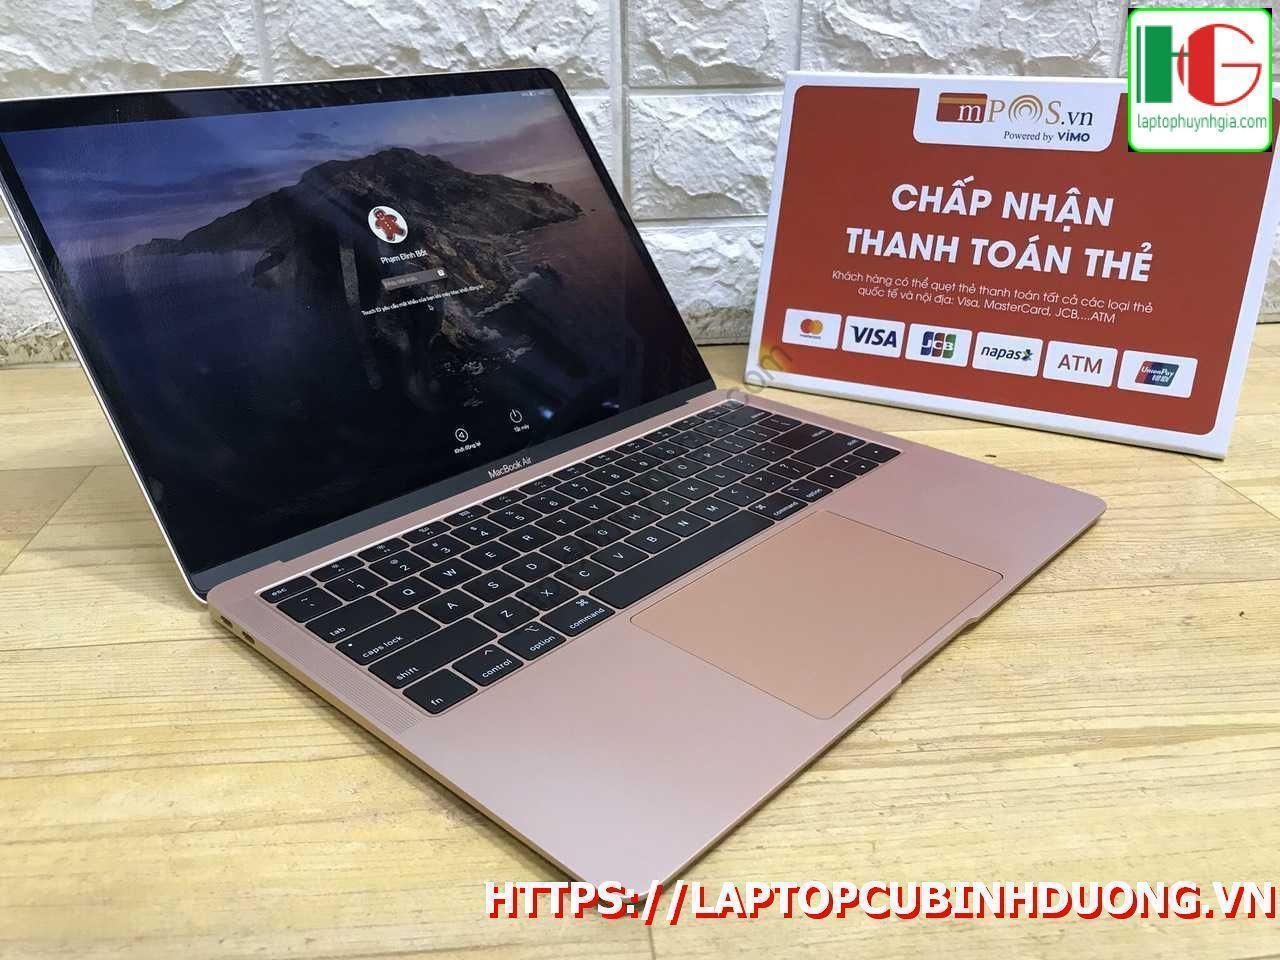 Macbook Air 2018 I5 8g Ssd 128g Laptopcubinhduong.vn